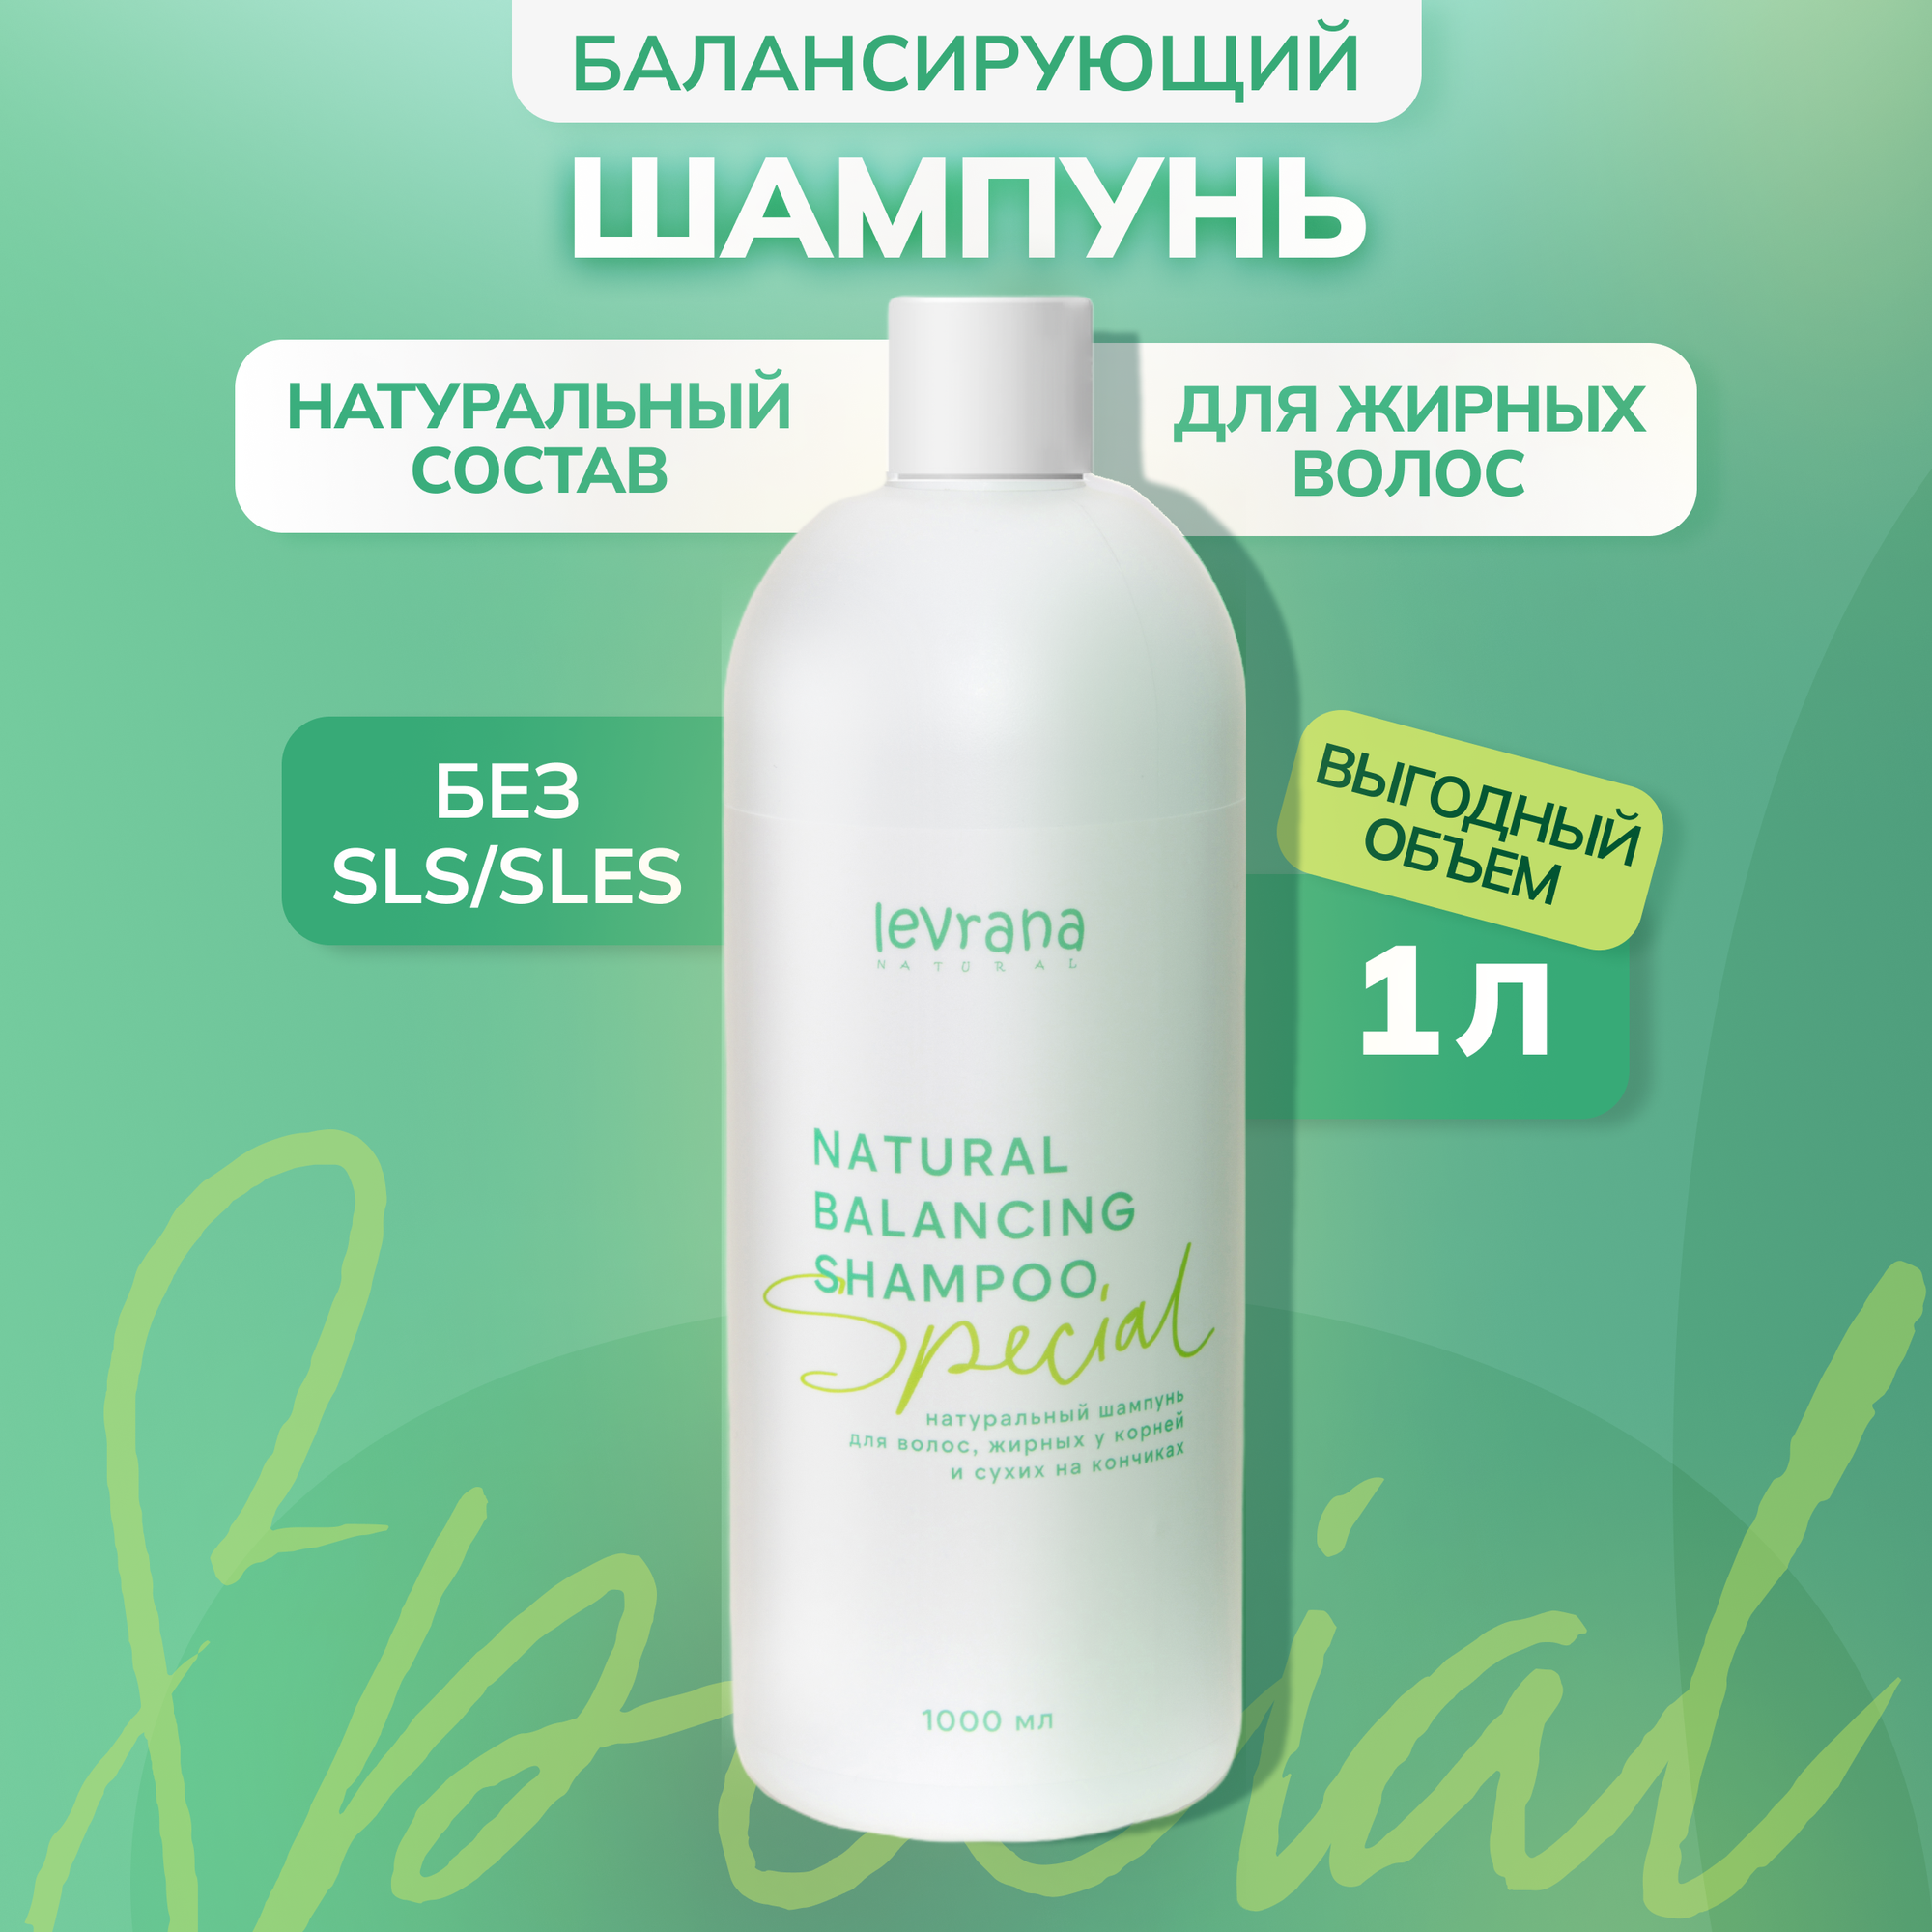 Levrana Шампунь Special для волос, жирных у корней и сухих на кончиках, 1 л